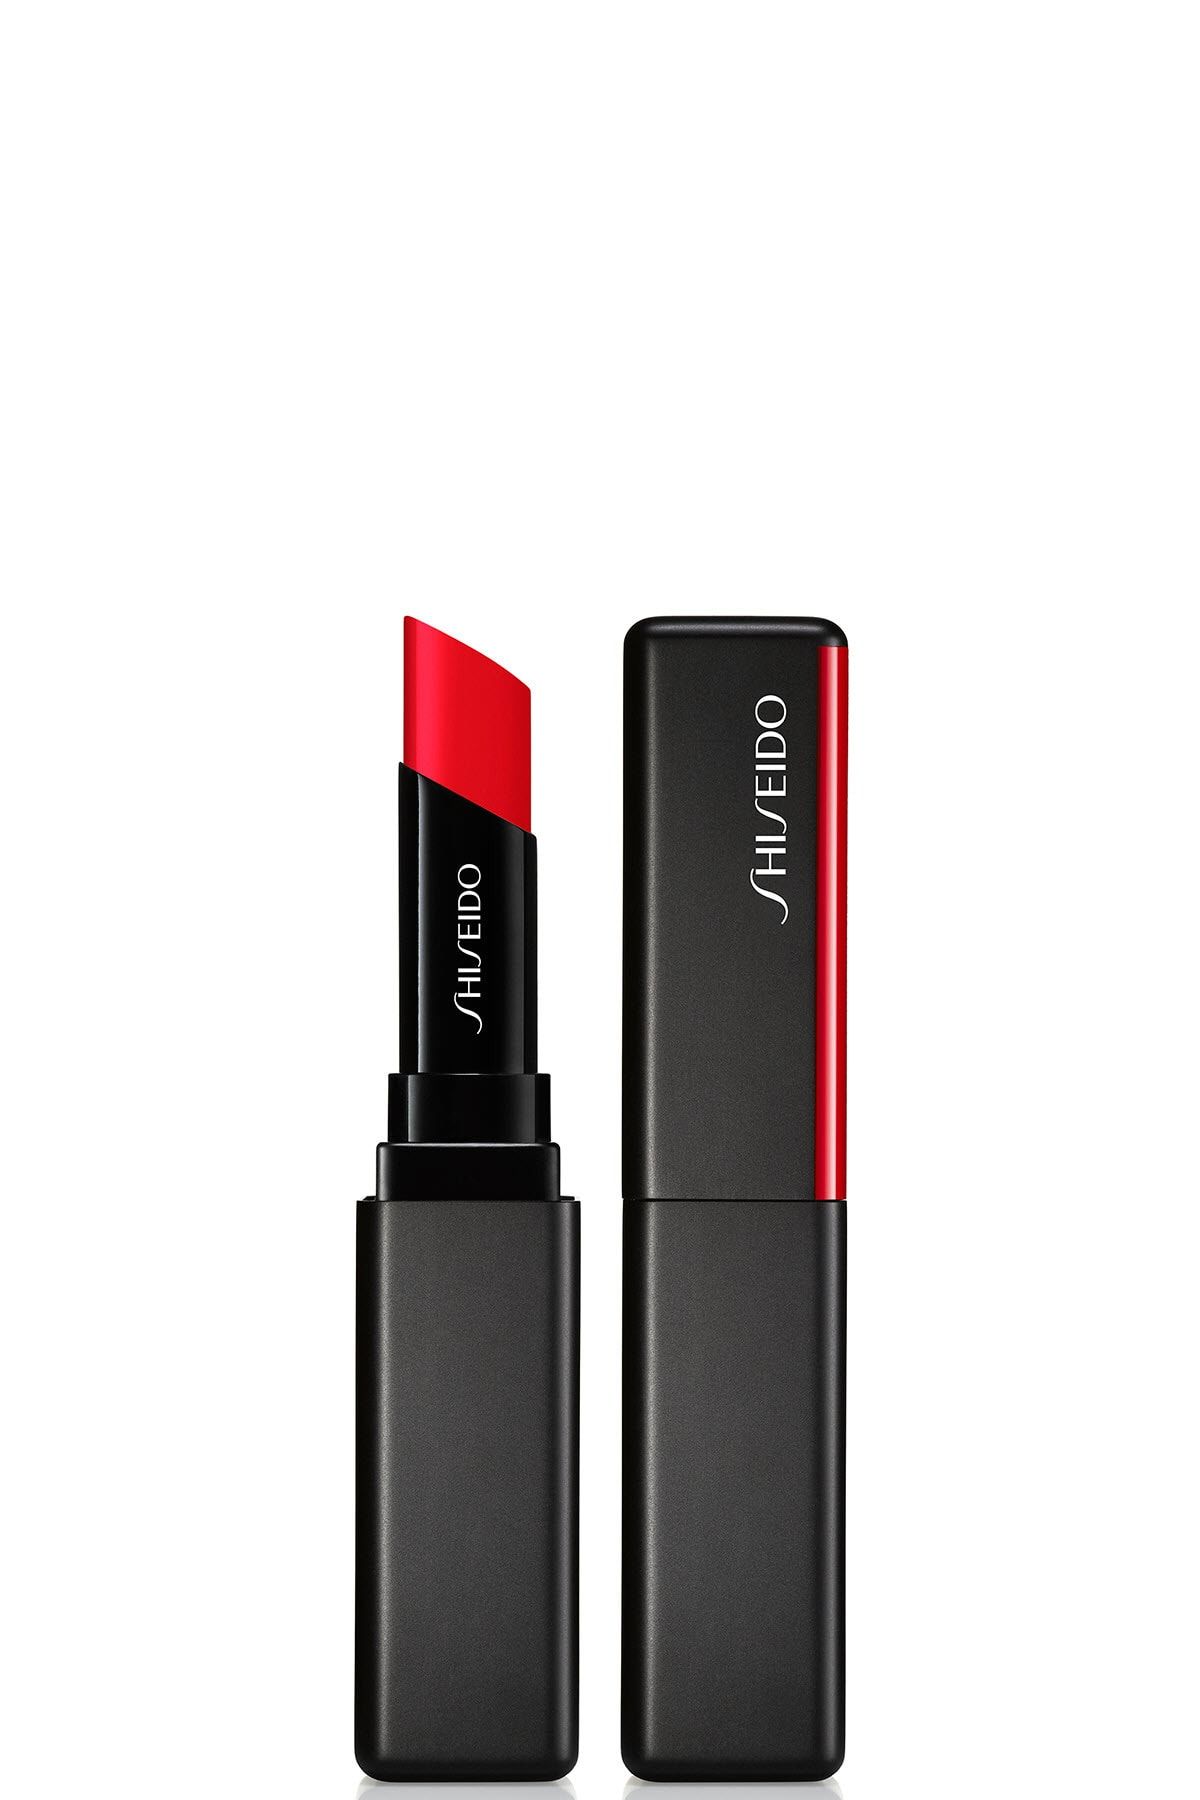 Shiseido Kalıcı Nemlendirici Ruj - SMK Visionairy Gel Lipstick 218 729238151956